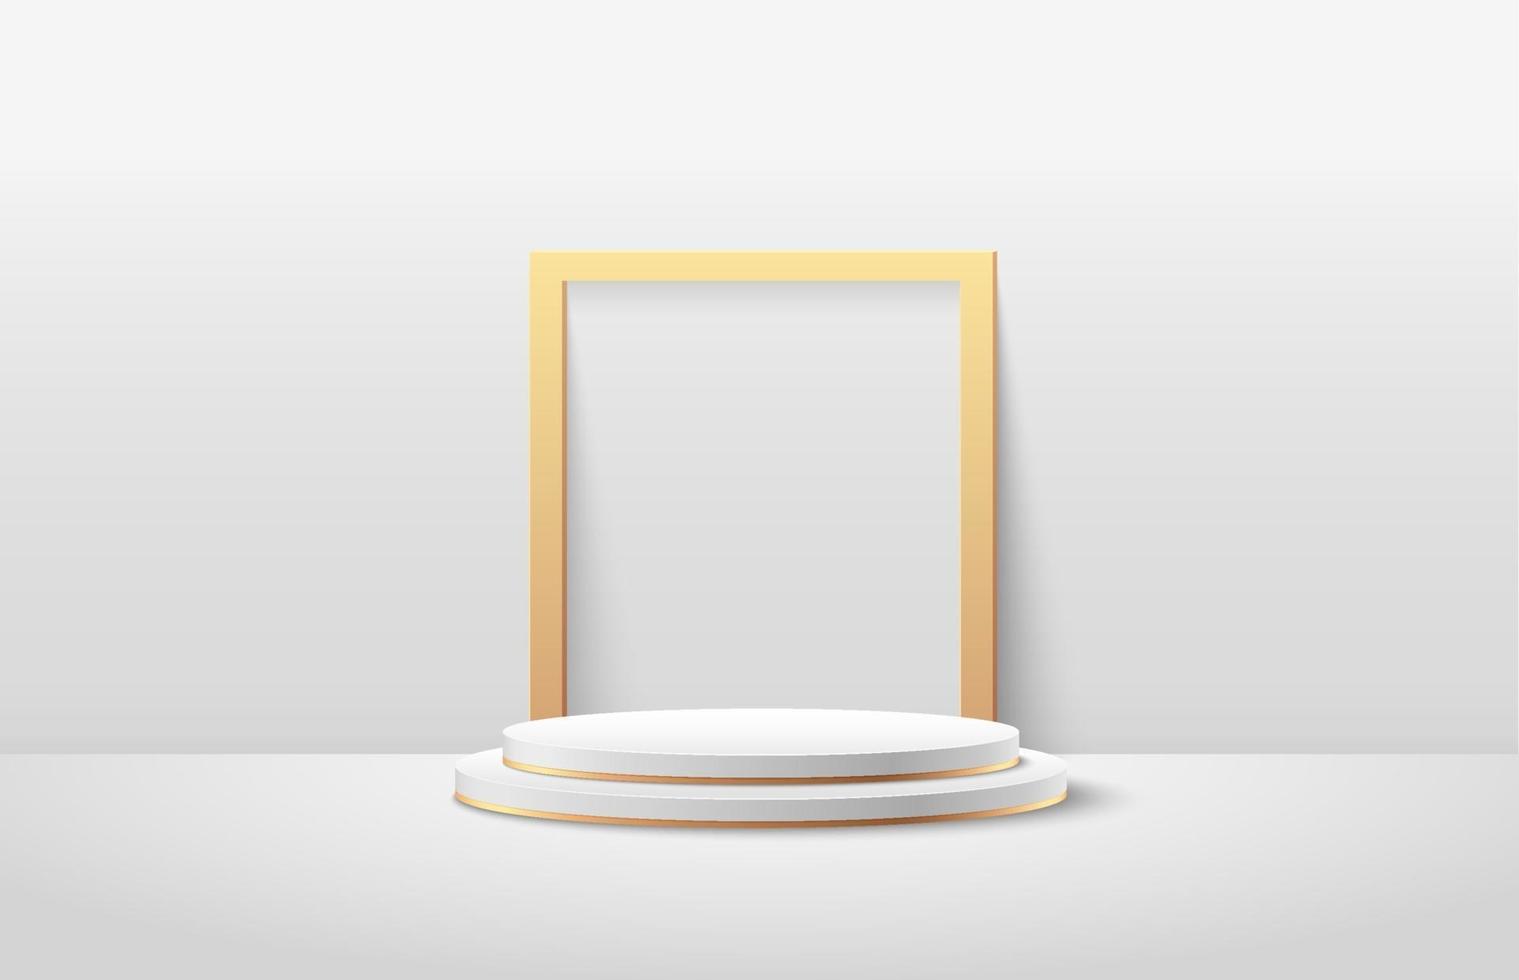 pantalla redonda abstracta para el producto en el sitio web en estilo moderno. representación de fondo con podio y blanco mínimo, escena de pared de textura dorada, representación 3d de lujo forma geométrica color blanco. vector eps10